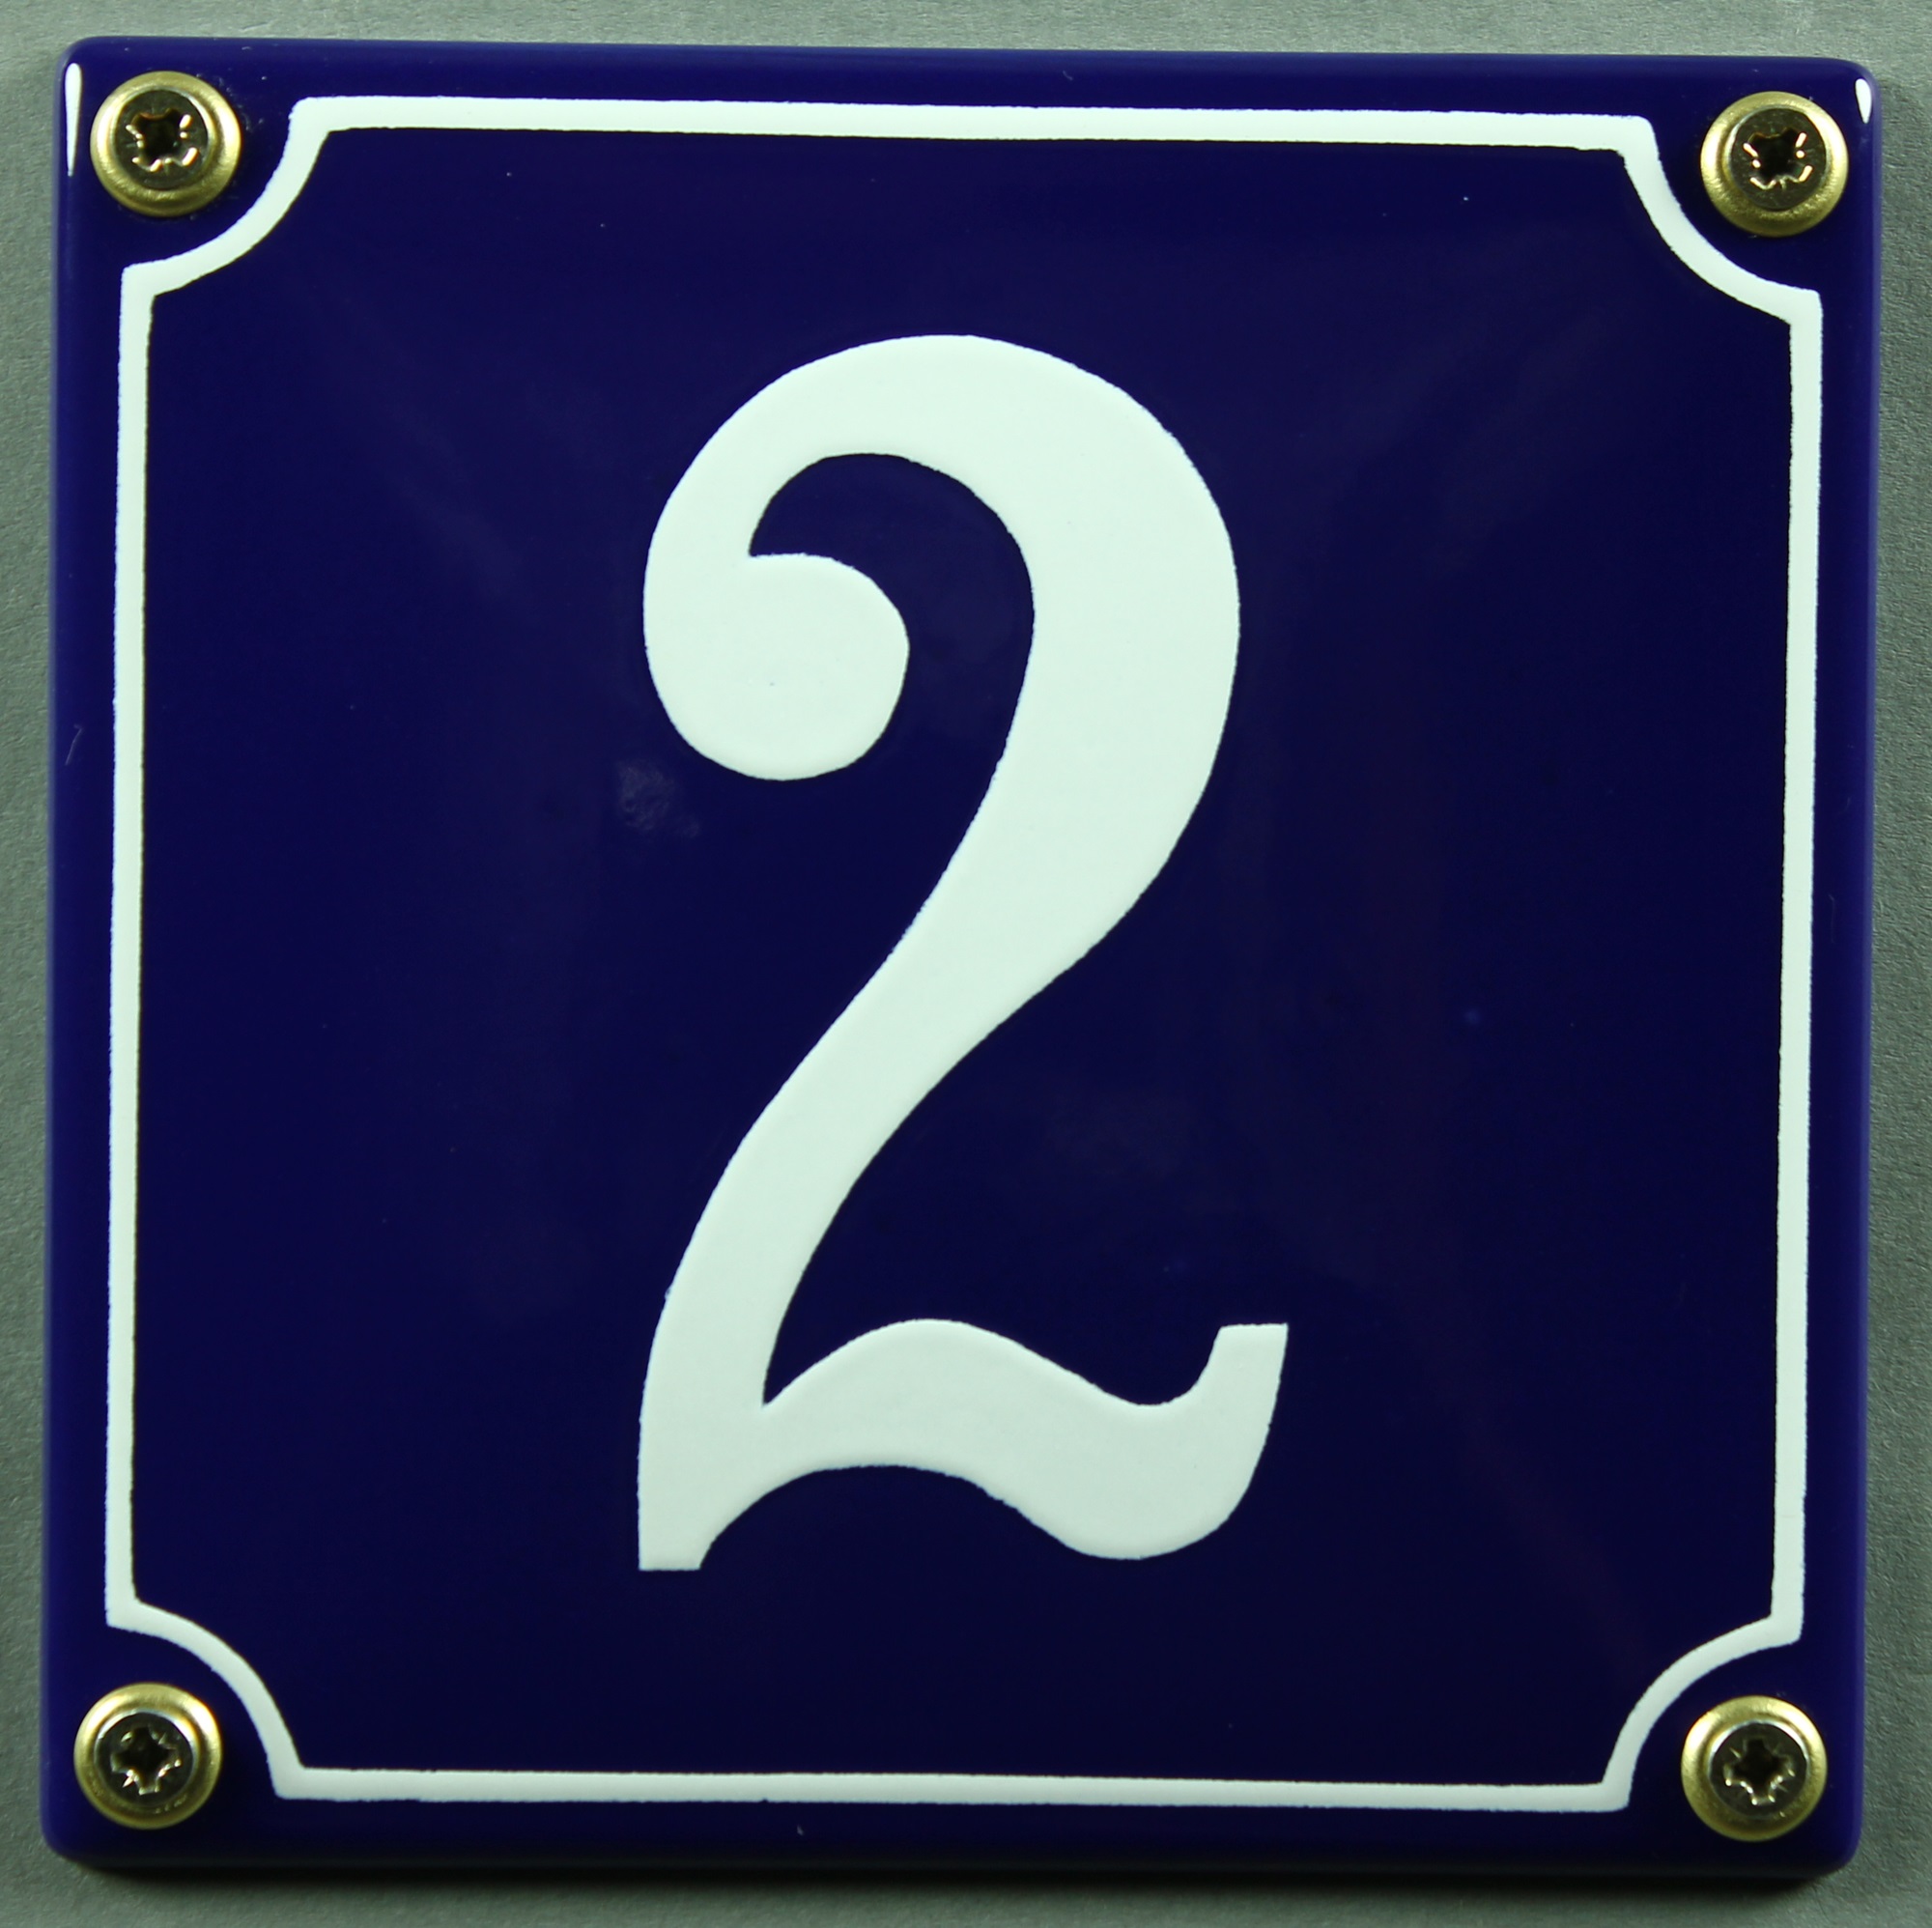 blau/weiß 12x12 cm und 12x14cm Emaille Hausnummernschild 1 blau/weiß 12x12cm Hausnummer Schild wetterfest und lichtecht Zahlen 1 bis 30 verfügbar Wählen Sie Ihre Nummer sofort lieferbar